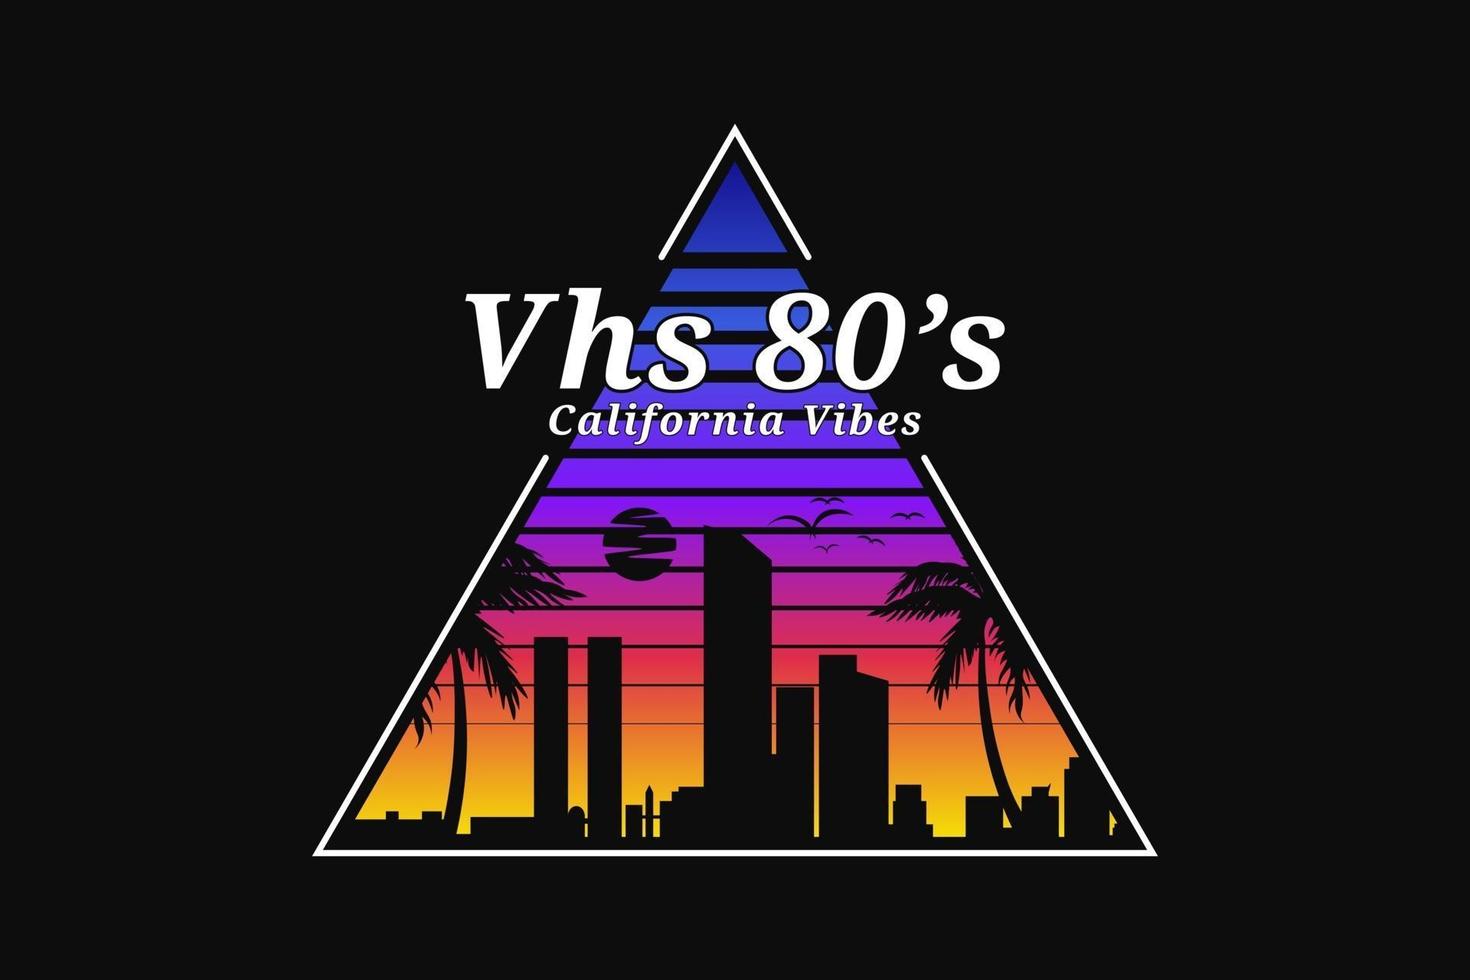 vhs 80's california vibes, silueta retro estilo 80's vector